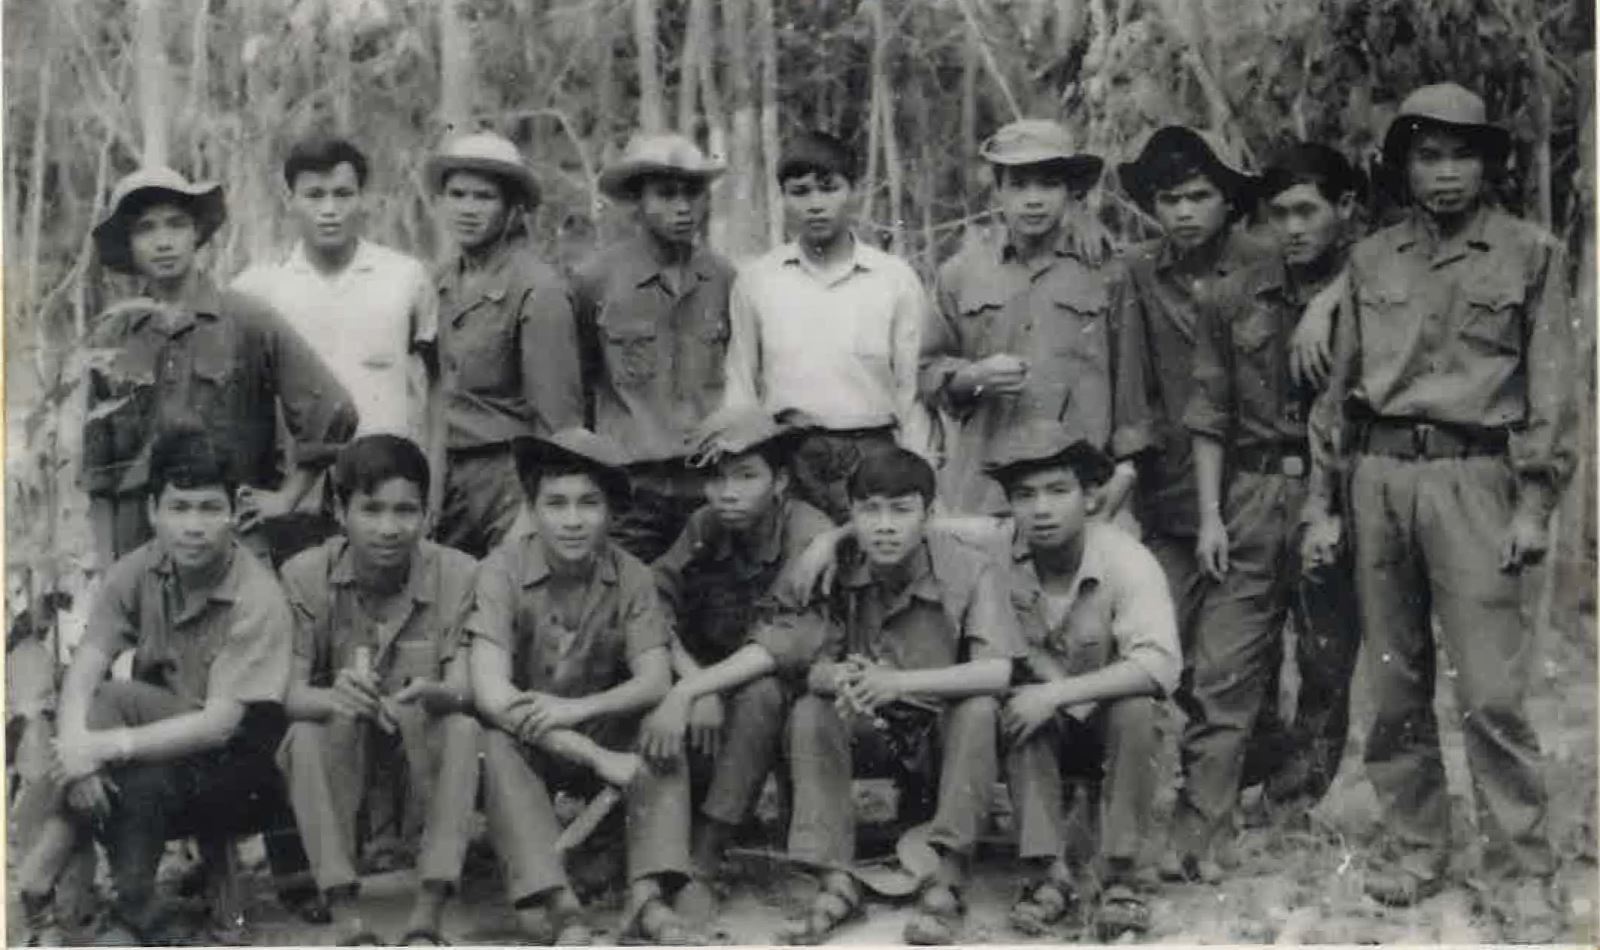 Tác giả bài viết (áo trắng - hàng đứng, thứ hai từ trái qua) cùng các đồng đội được tăng cường VNTTX cho chiến trường miền Nam.